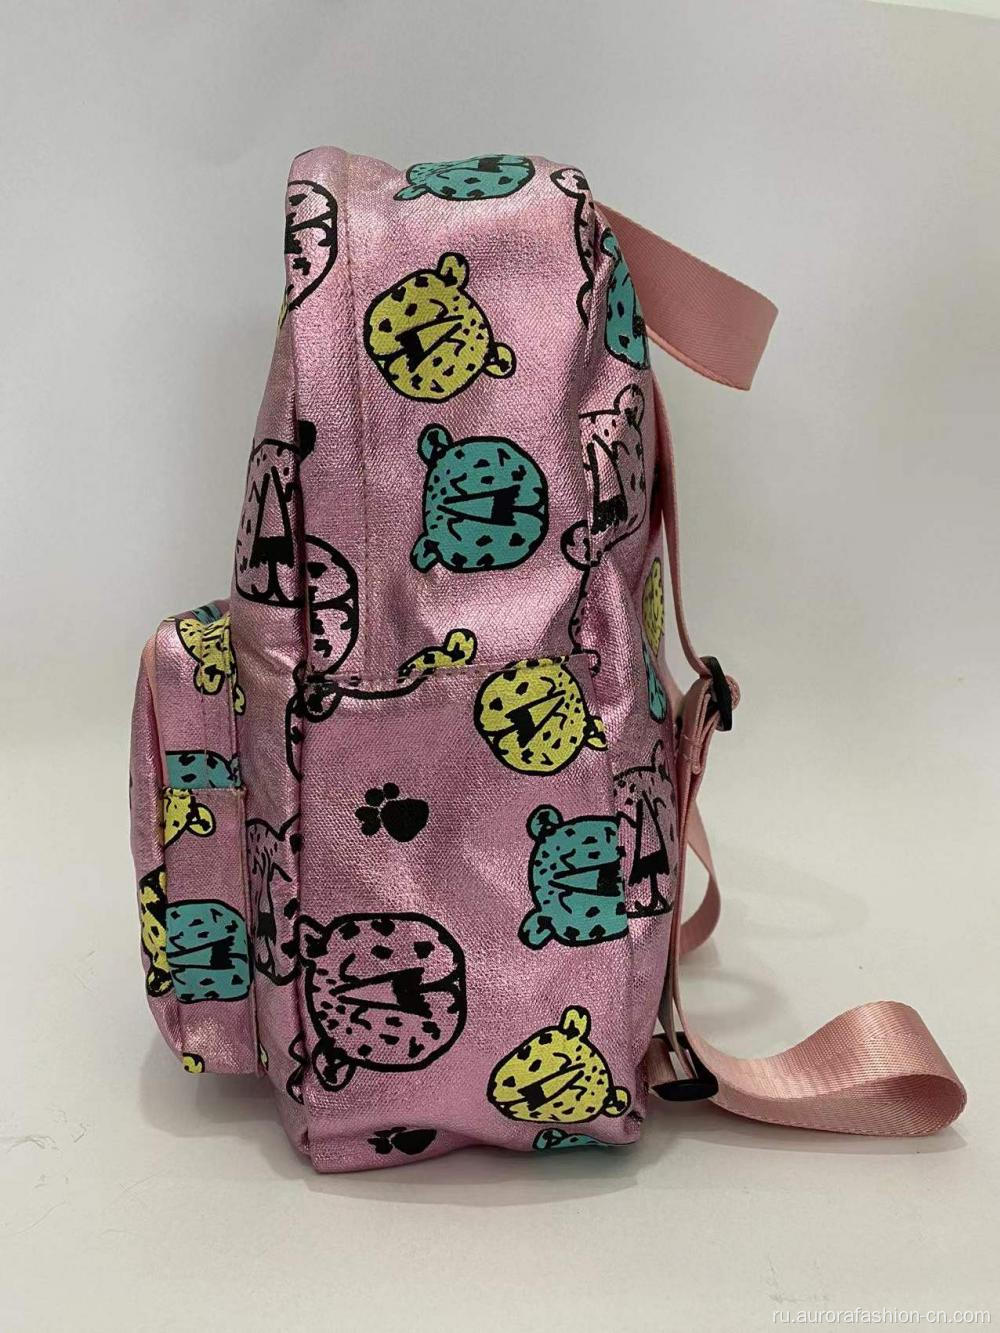 Розовые рюкзаки для маленьких детей или девочек